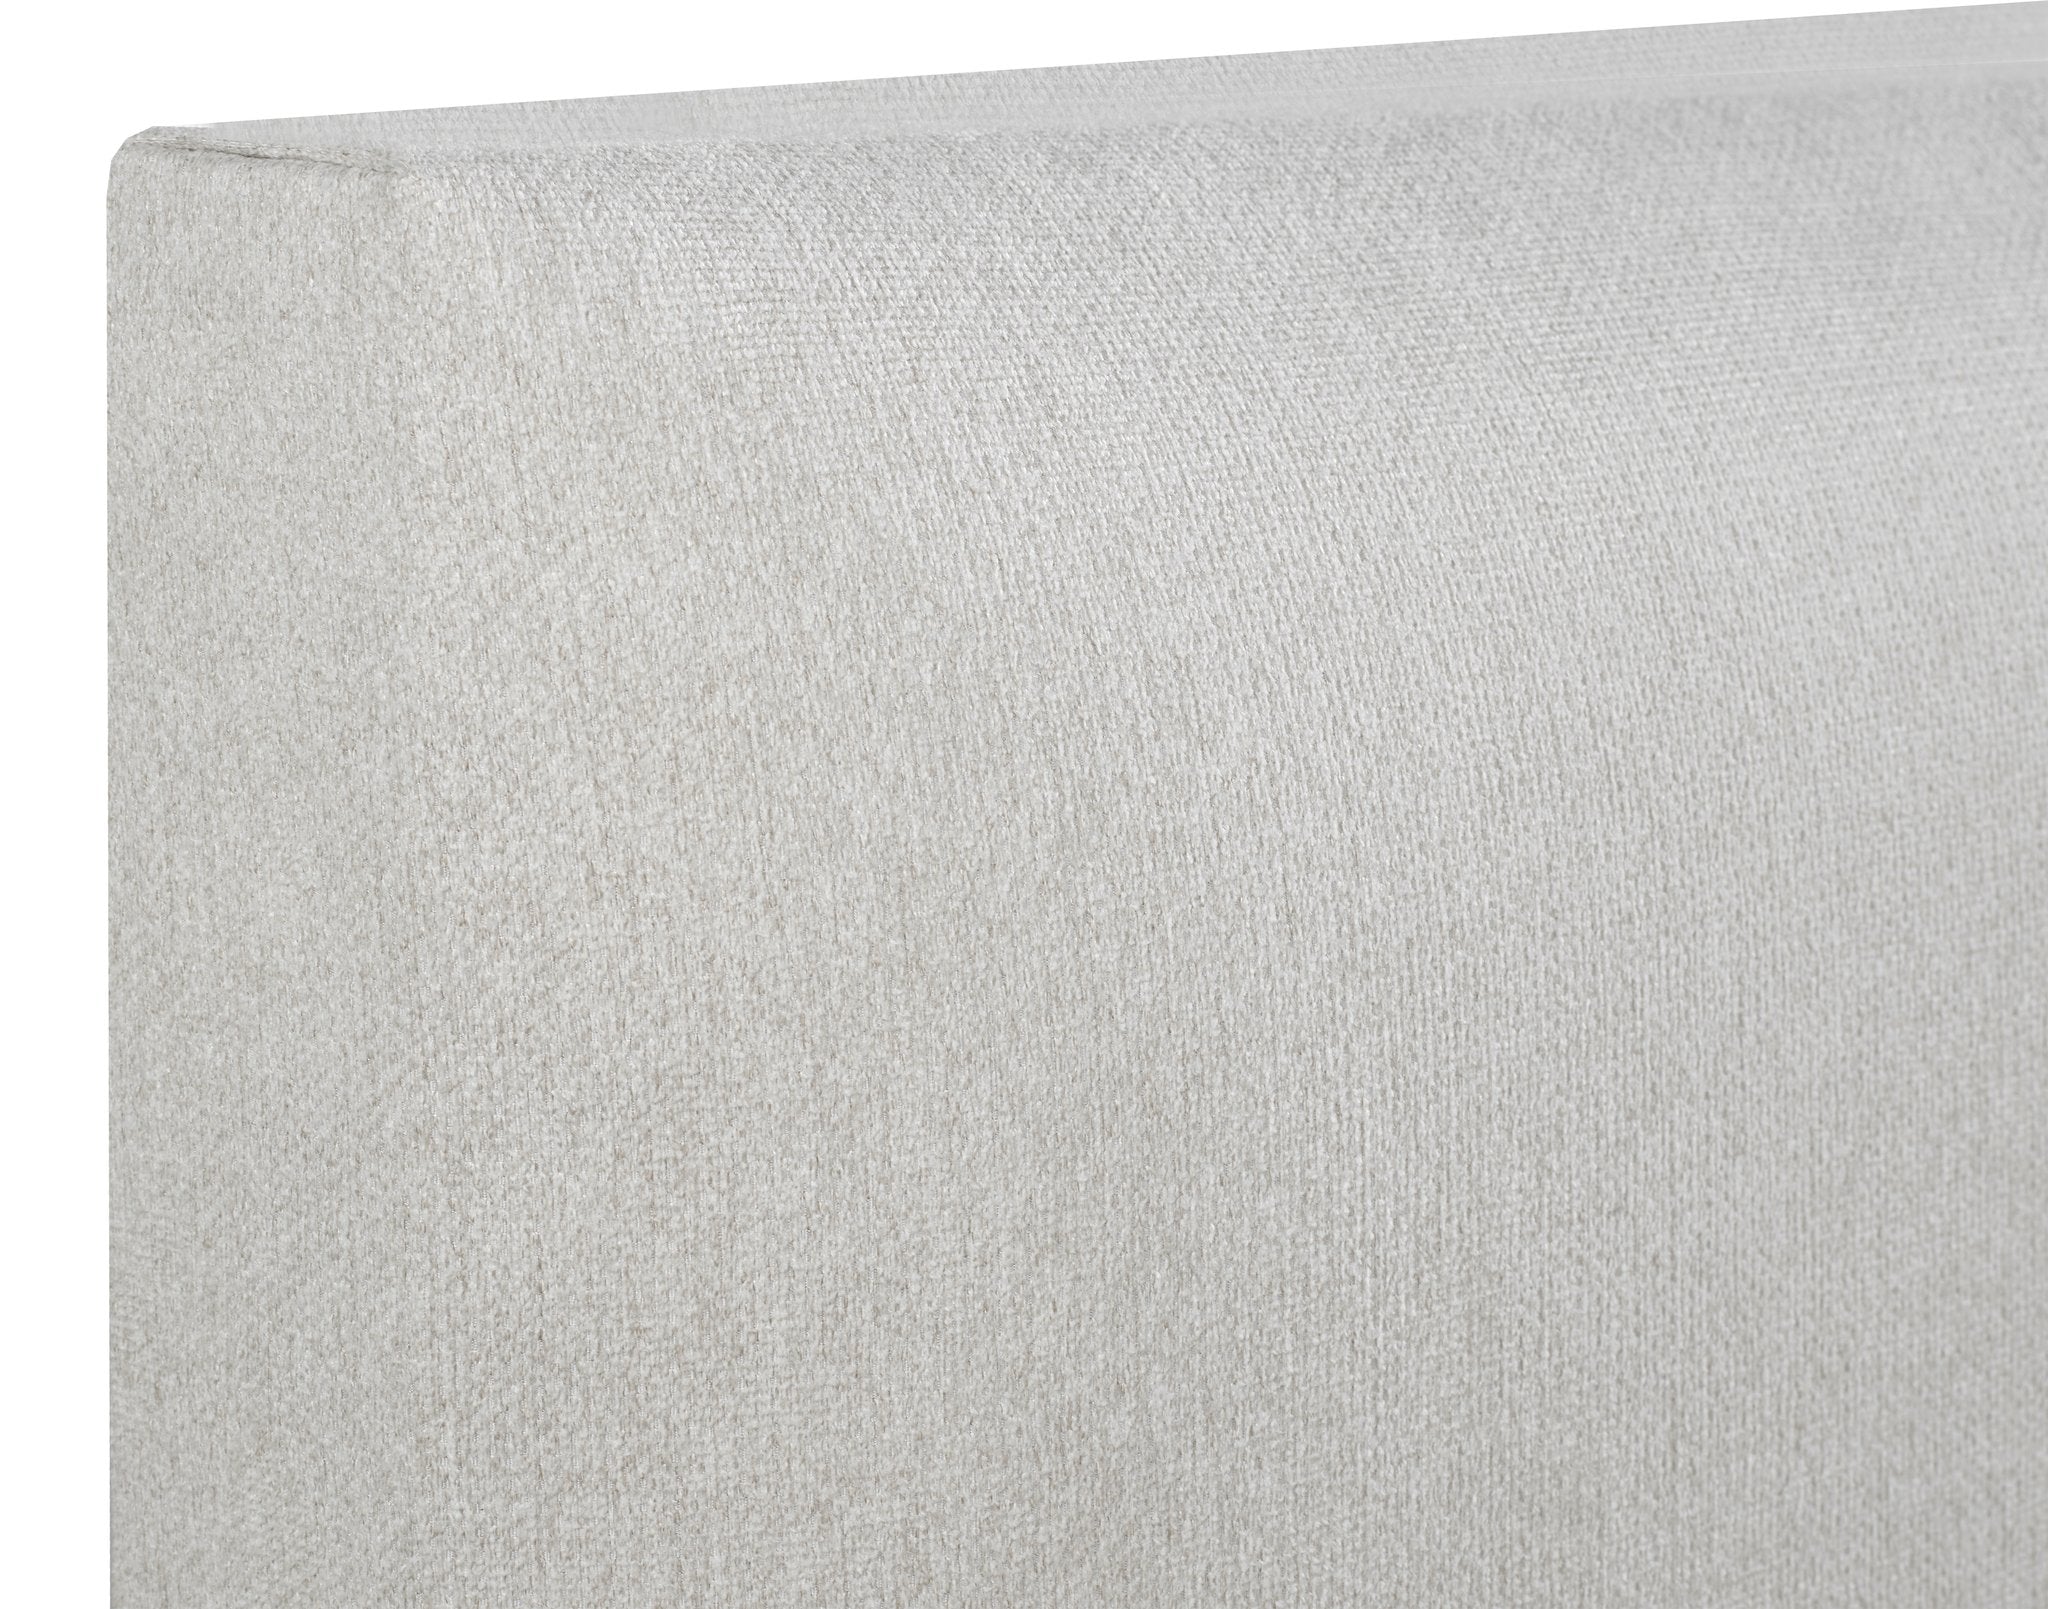 Sundre Platform Bed - Ivory Linen - Canadian Furniture